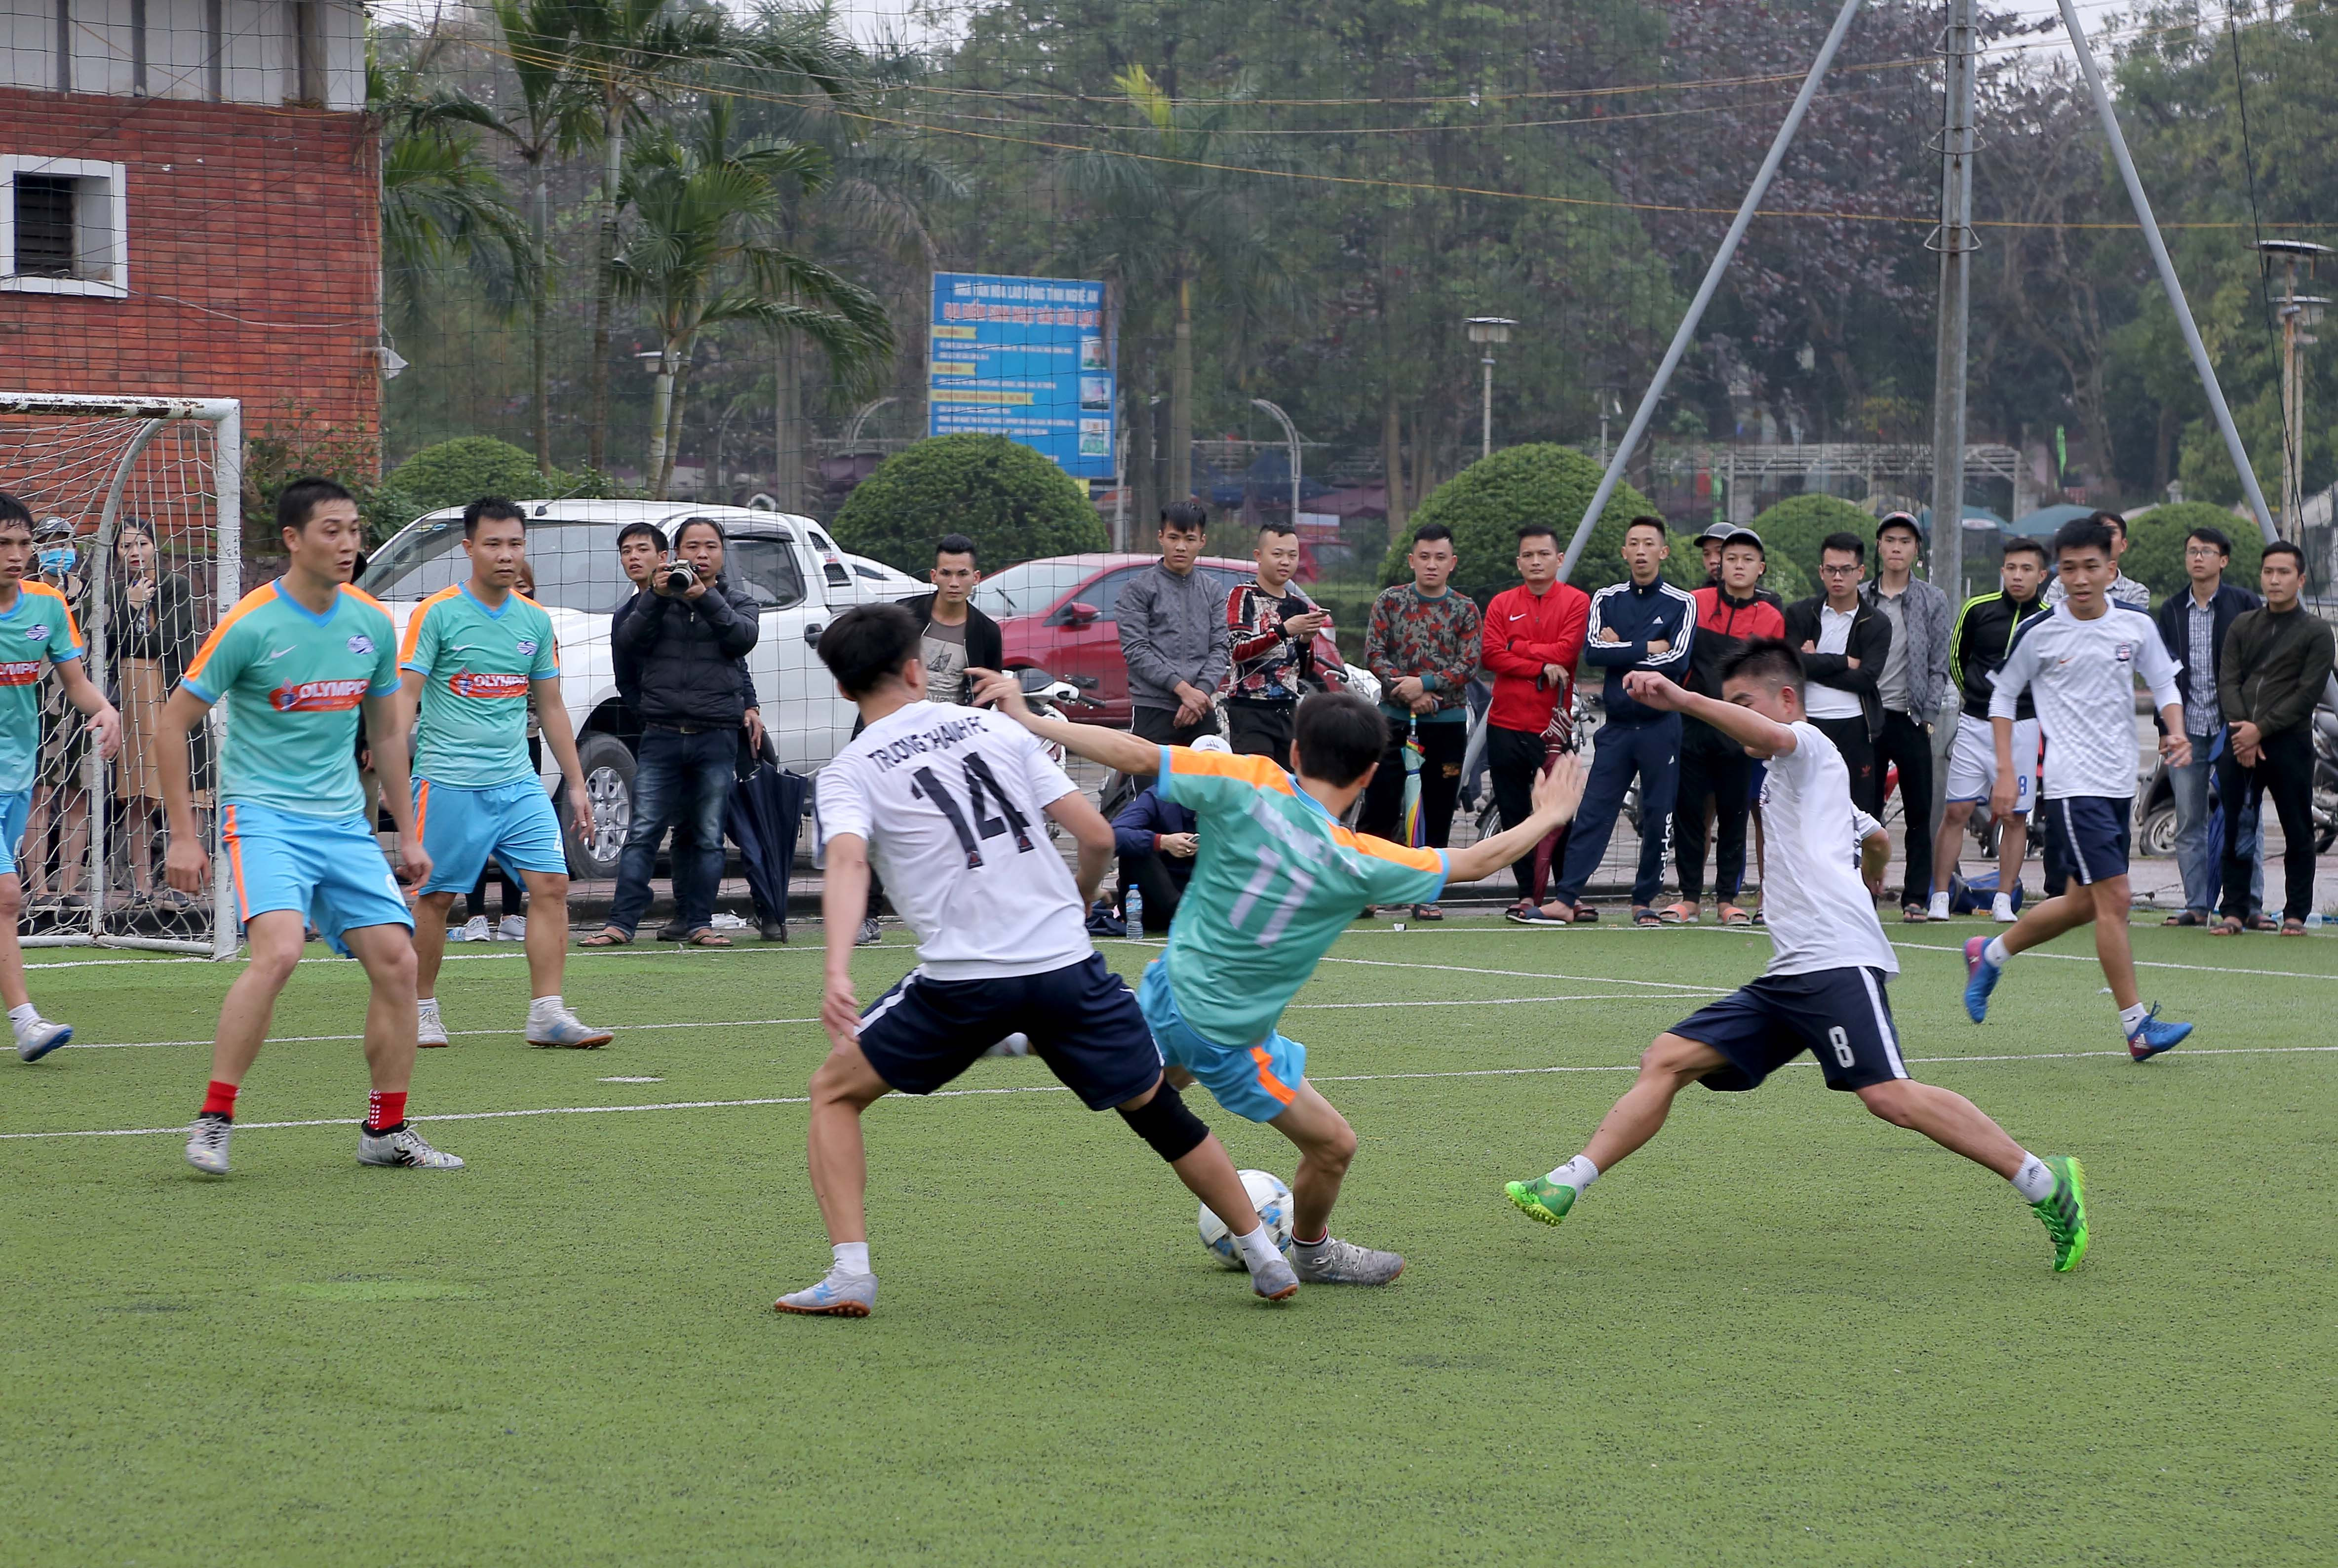 Pha bóng trong trận chung kết giữa FC Trường Thành và FC Vinaconex 16. Ảnh: Hoàng Hảo